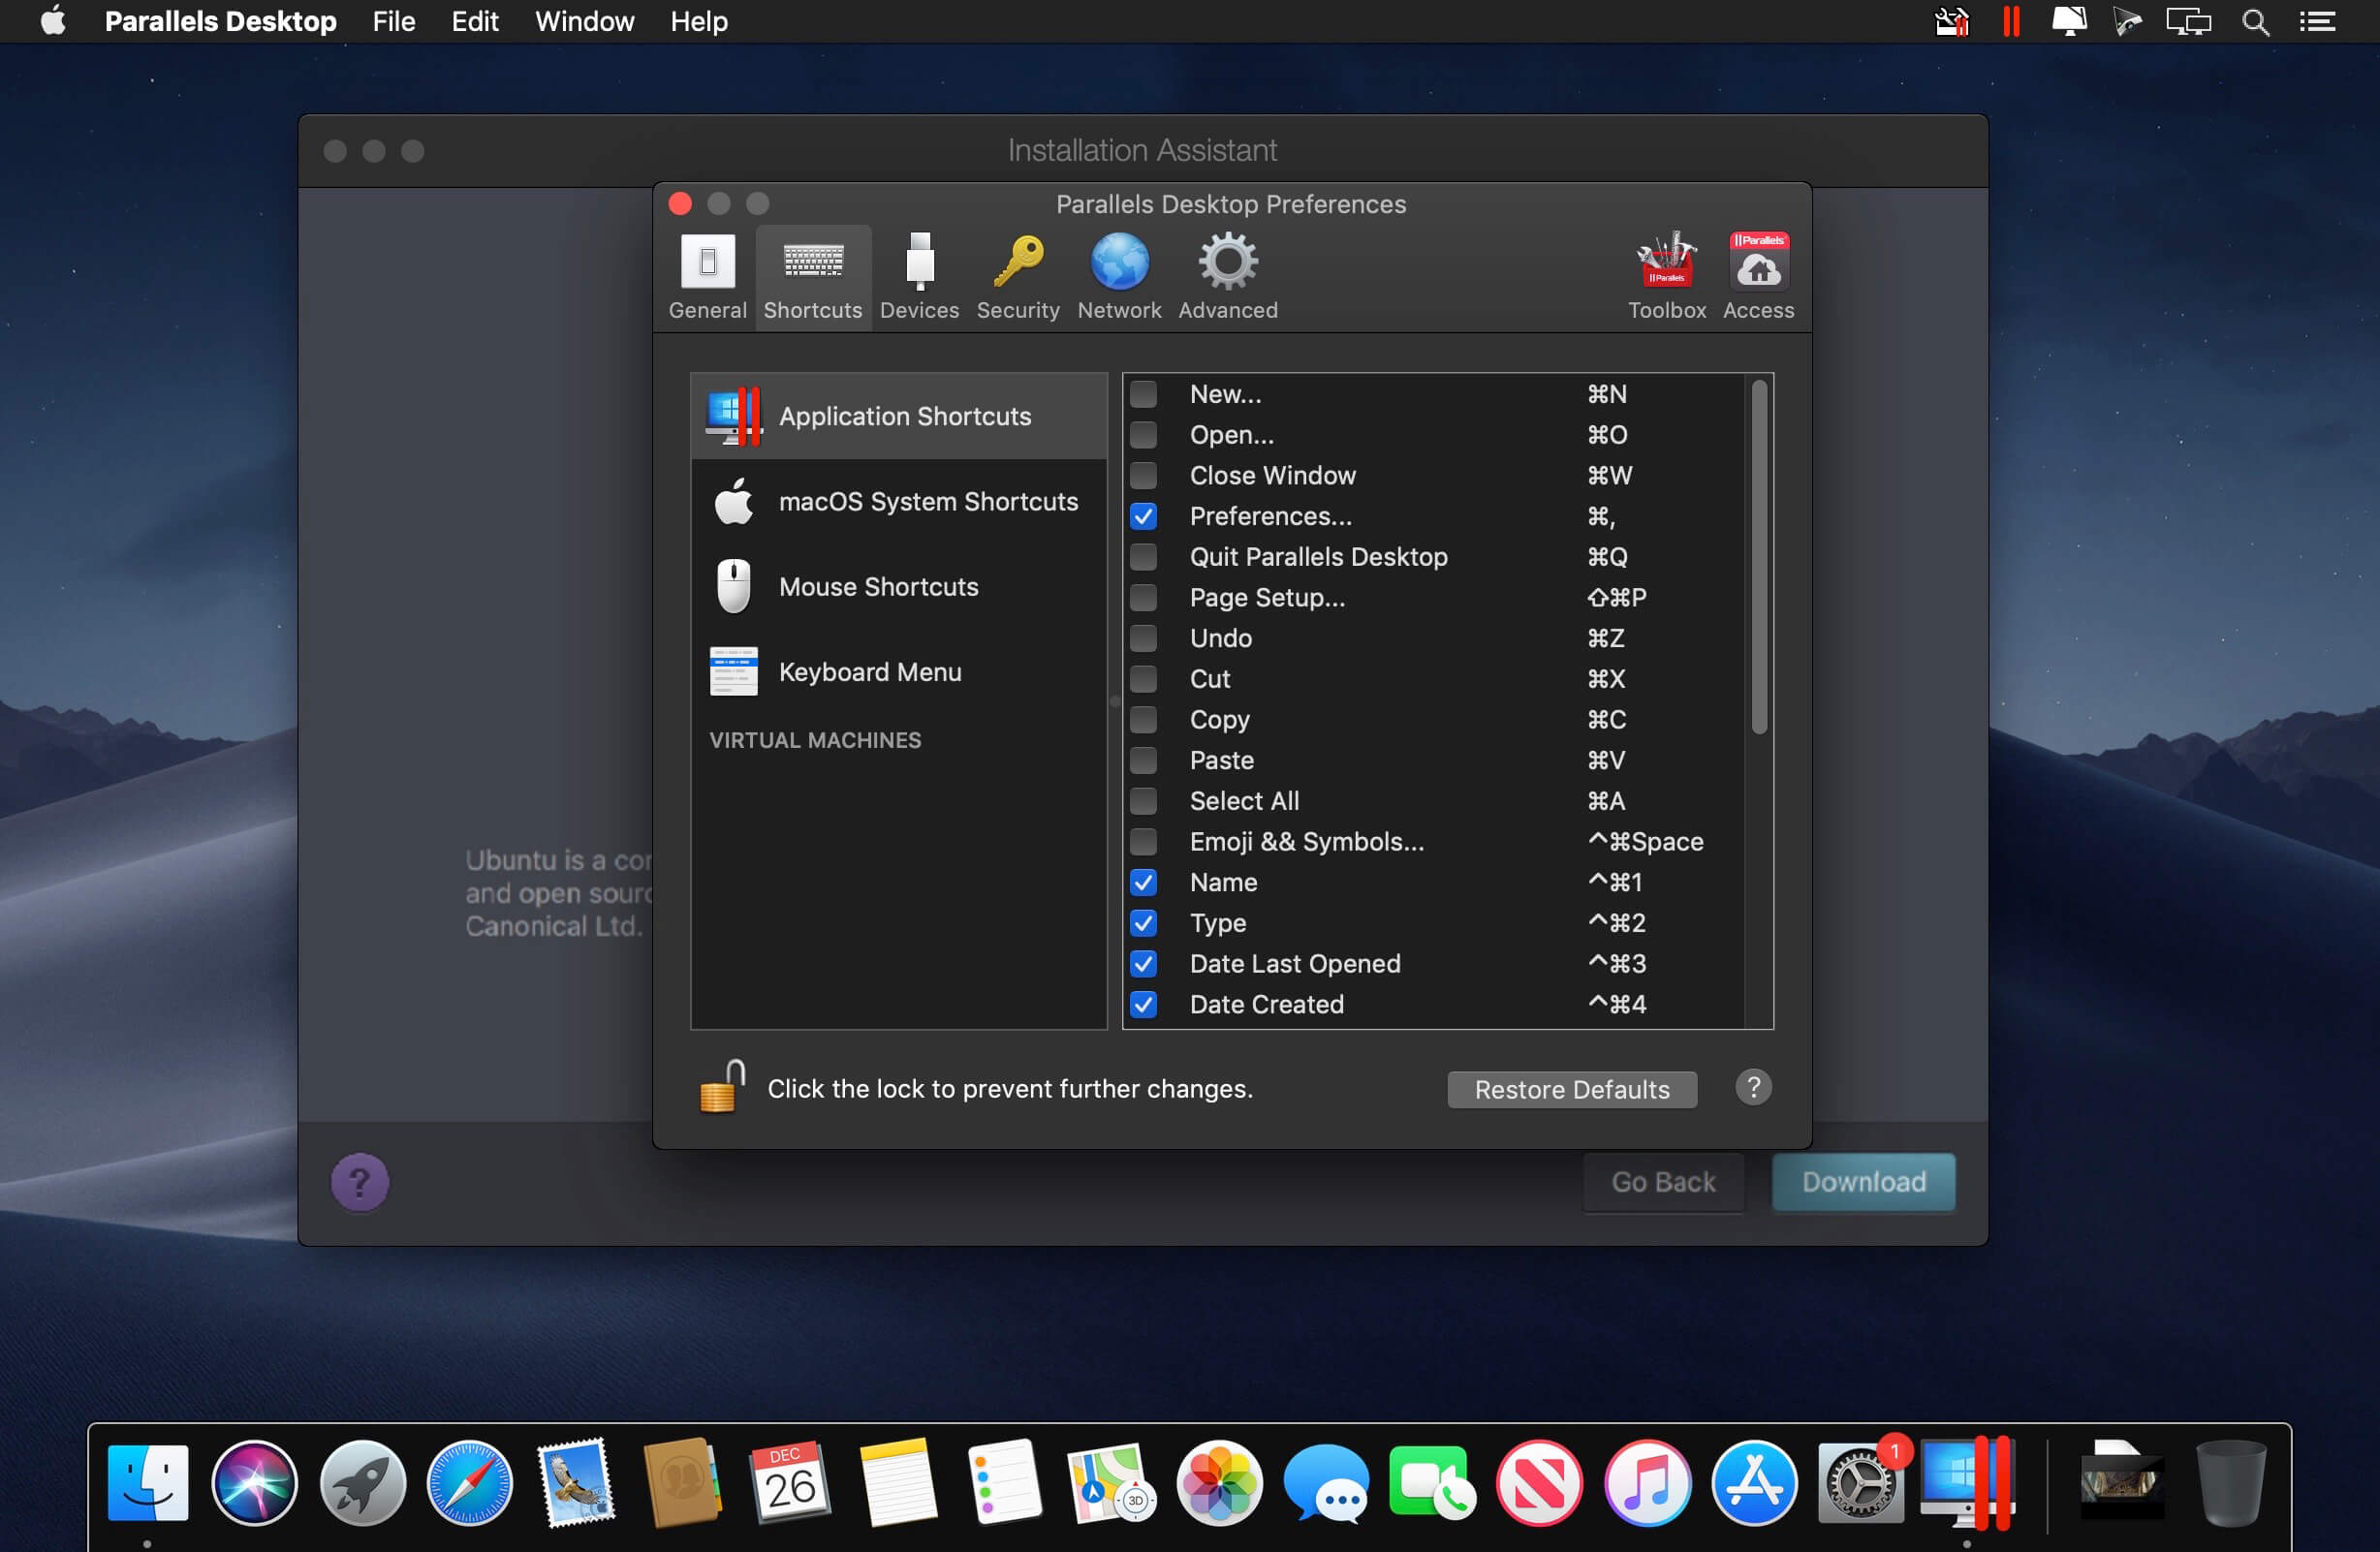 parallels desktop 14 pro edition key